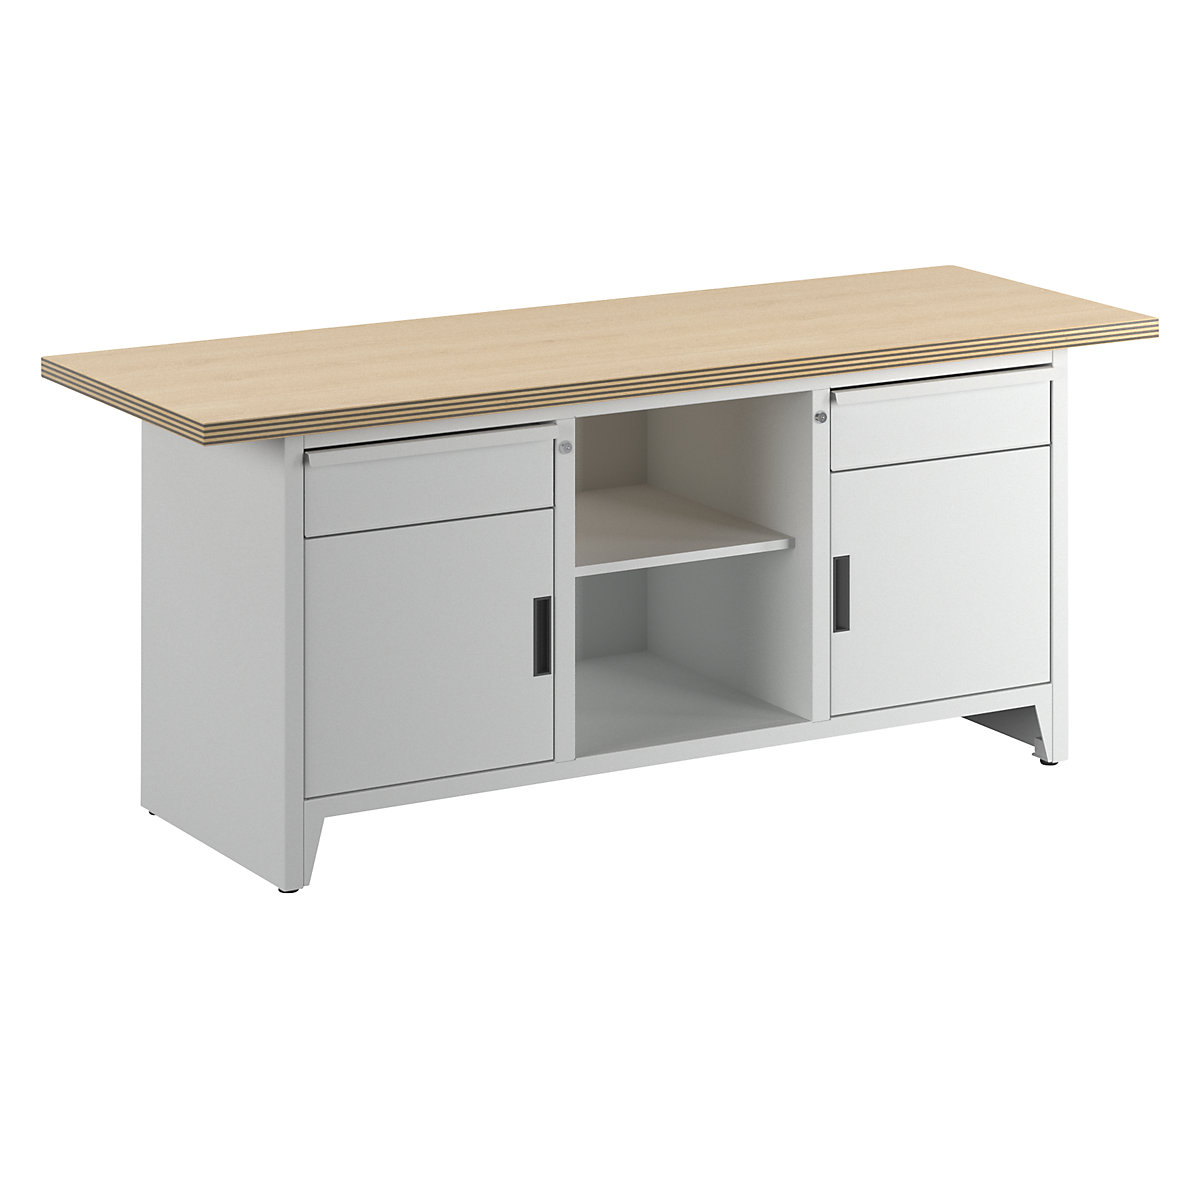 Stół warsztatowy, szerokość 2000 mm, konstrukcja ramowa – LISTA